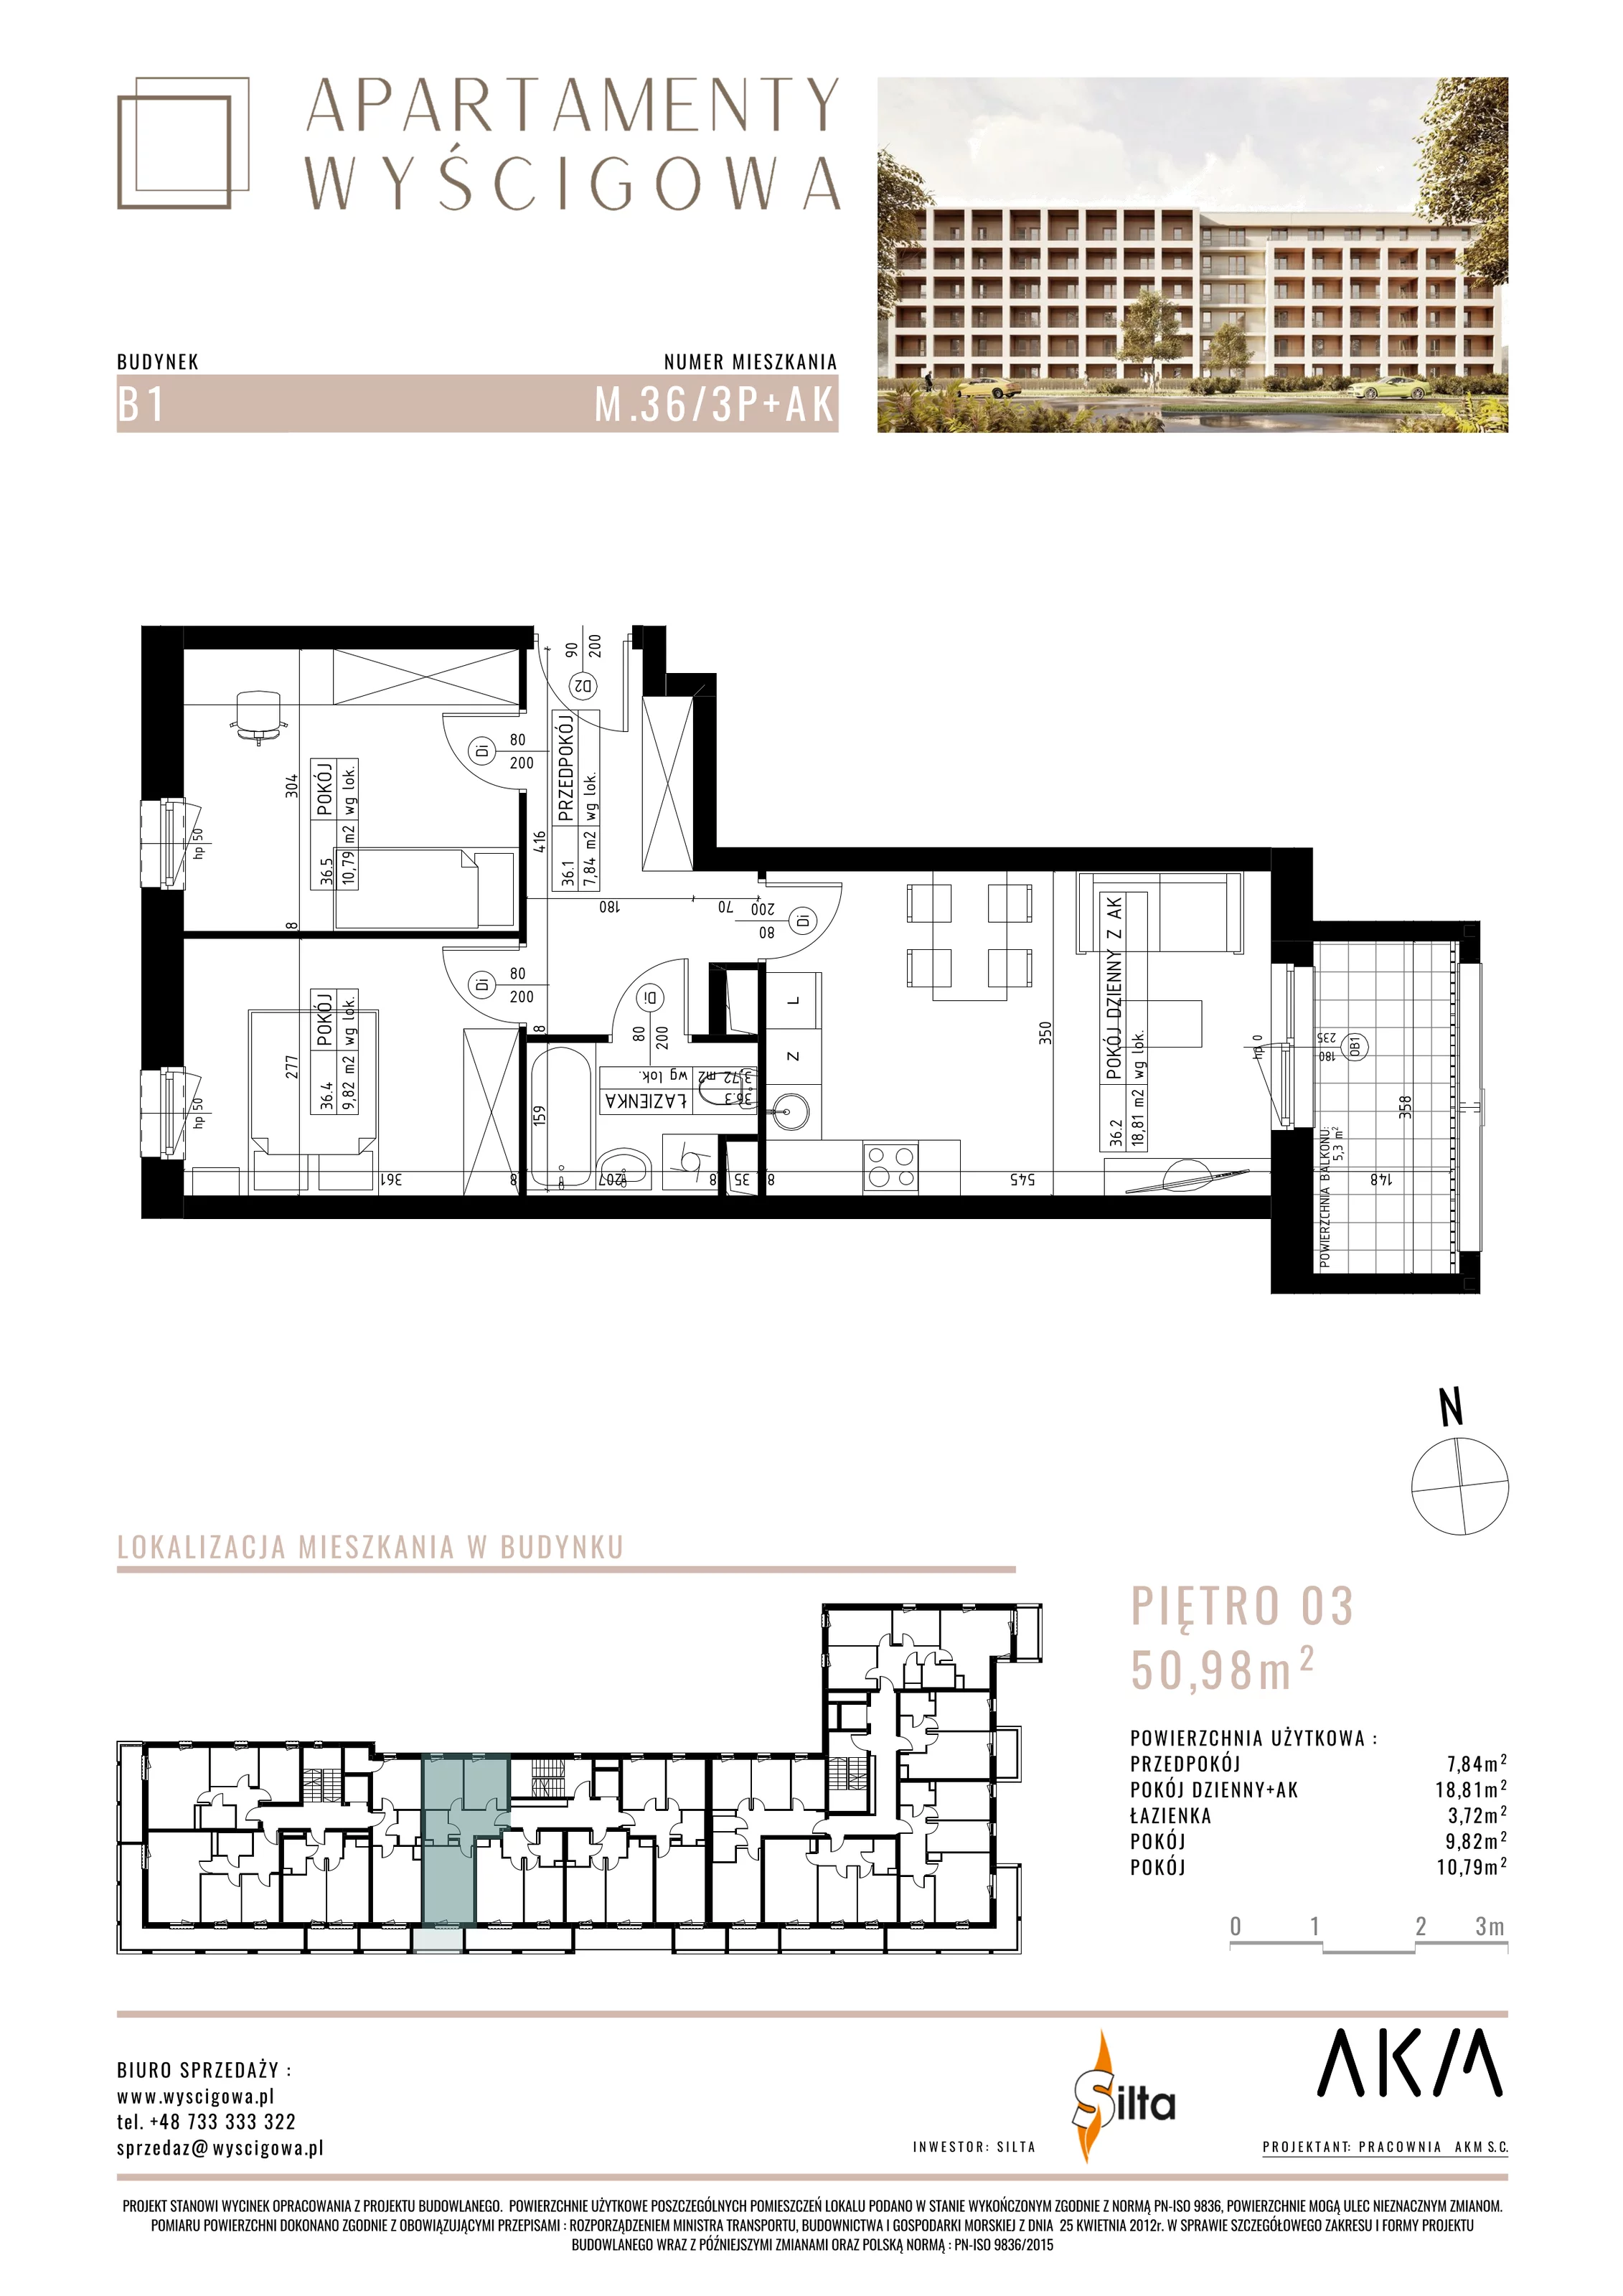 Mieszkanie 50,98 m², piętro 3, oferta nr B1.M36, Apartamenty Wyścigowa, Lublin, Dziesiąta, Dziesiąta, ul. Wyścigowa